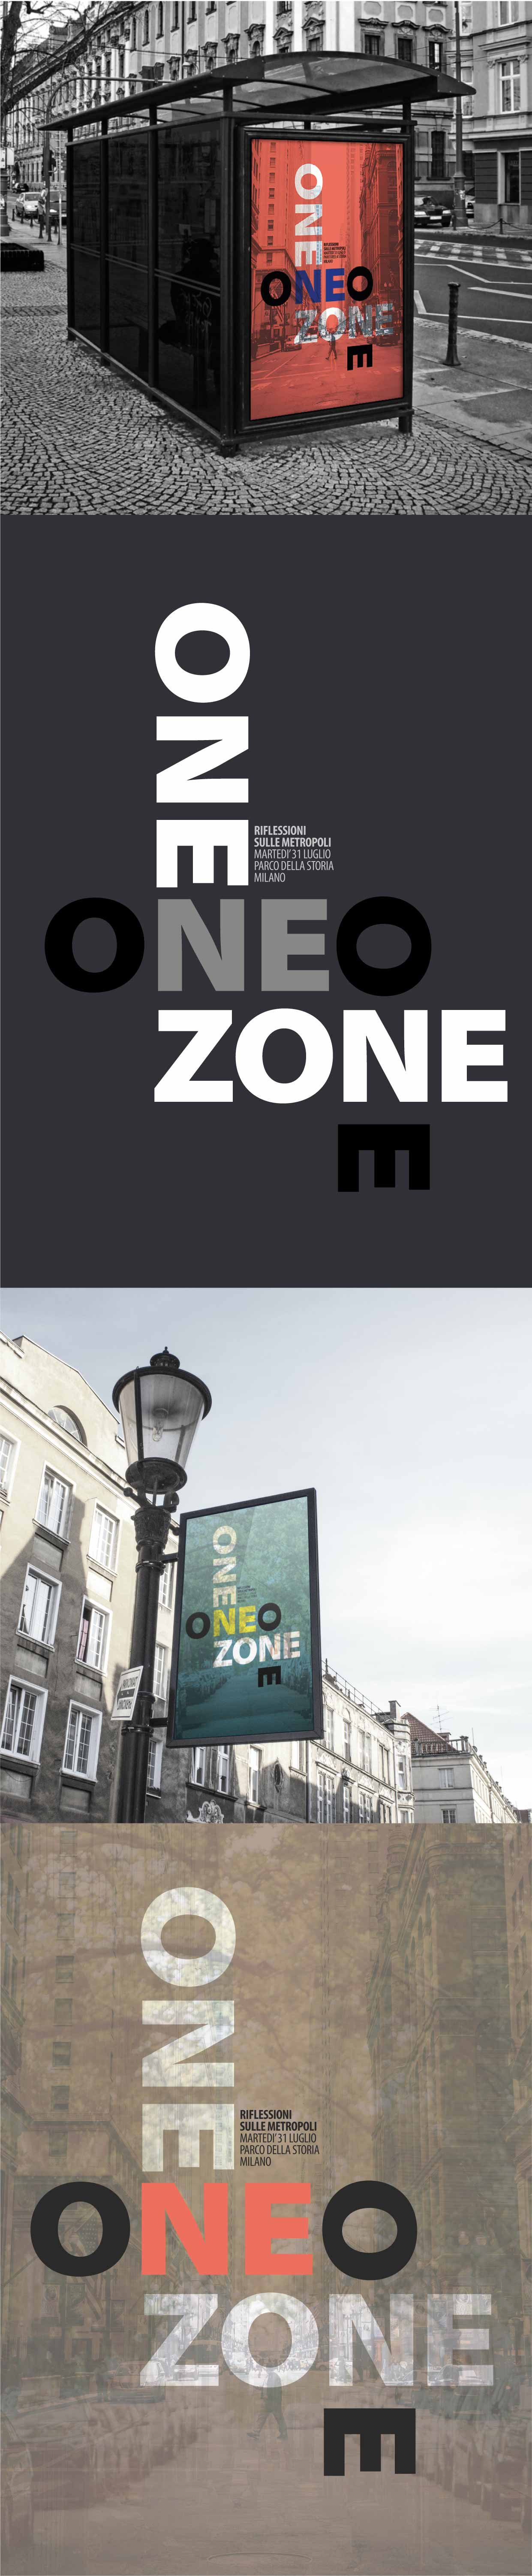 presentazione-visual-neo-one-zone